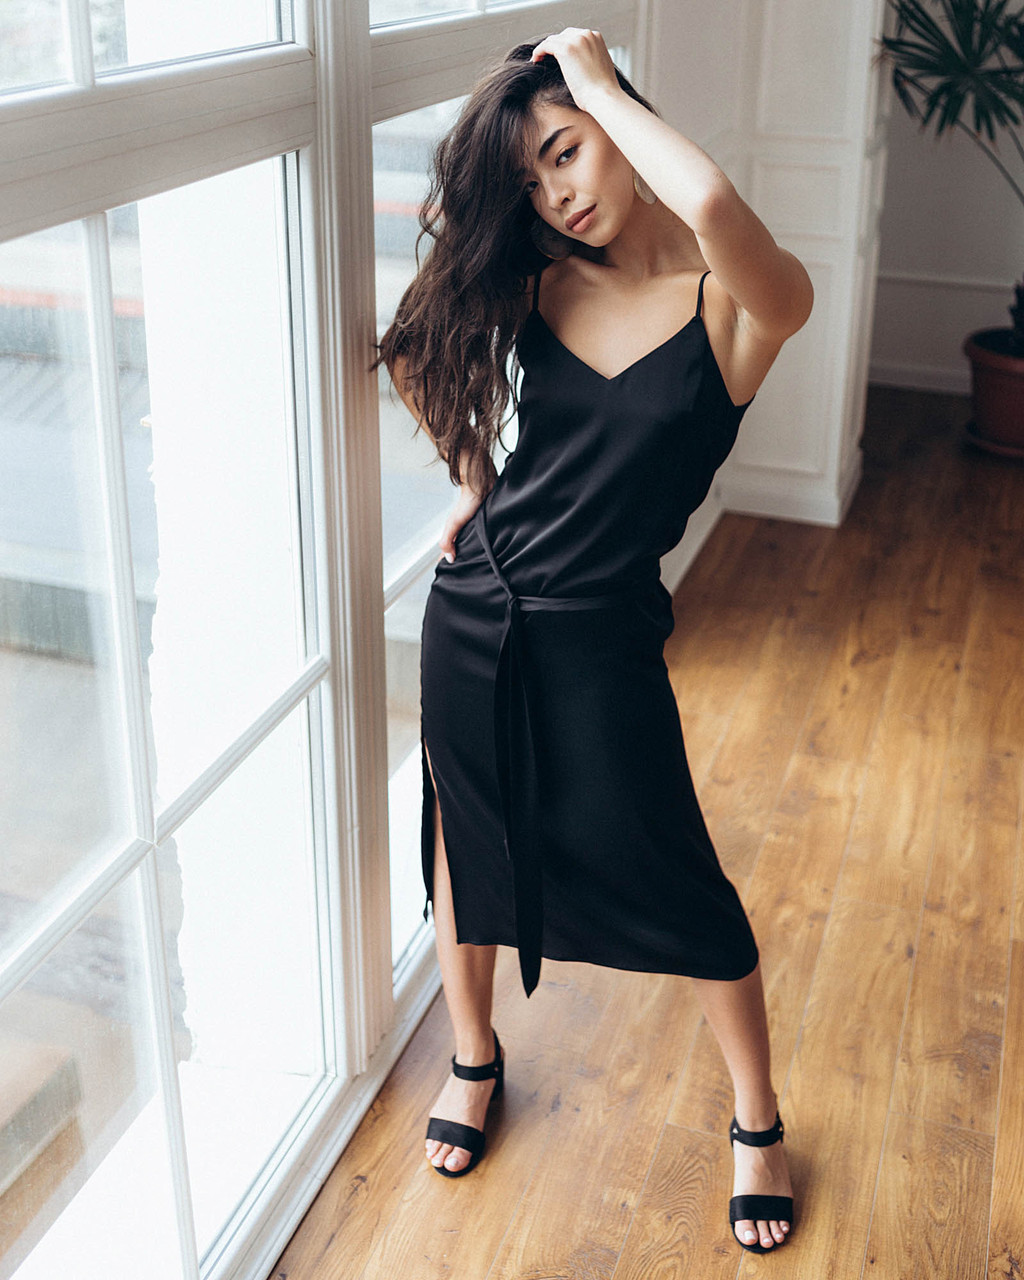 Шелковое платье женское длинное черное в бельевом стиле от бренда Тур - Фото 8